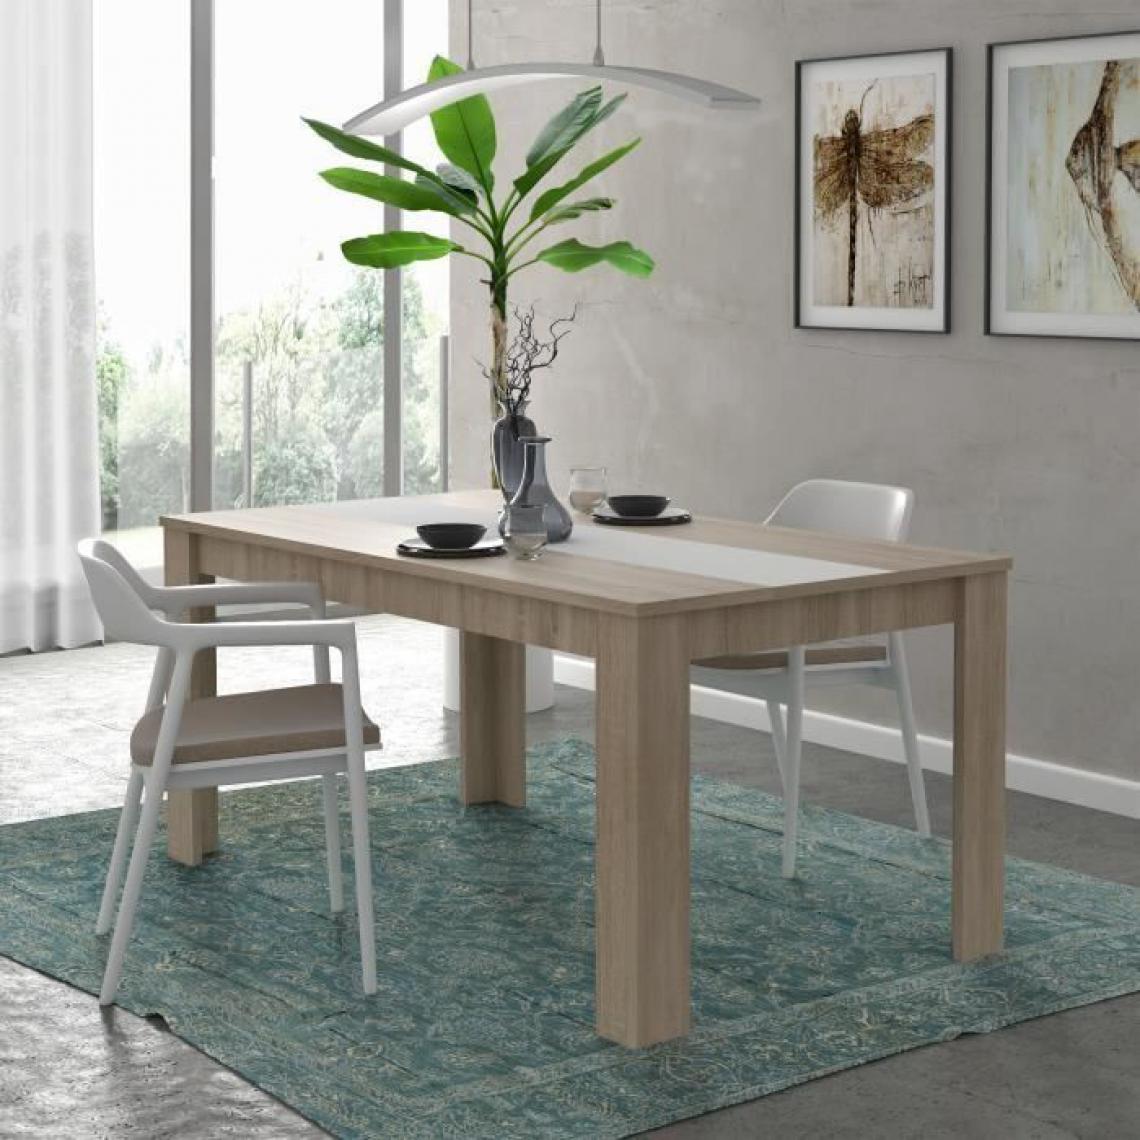 Finlandek - FINLANDEK Table a manger ELAMA de 6 a 8 personnes style contemporain en bois agglomere decor chene et blanc mat - L 160 x l 90 c - Tables à manger